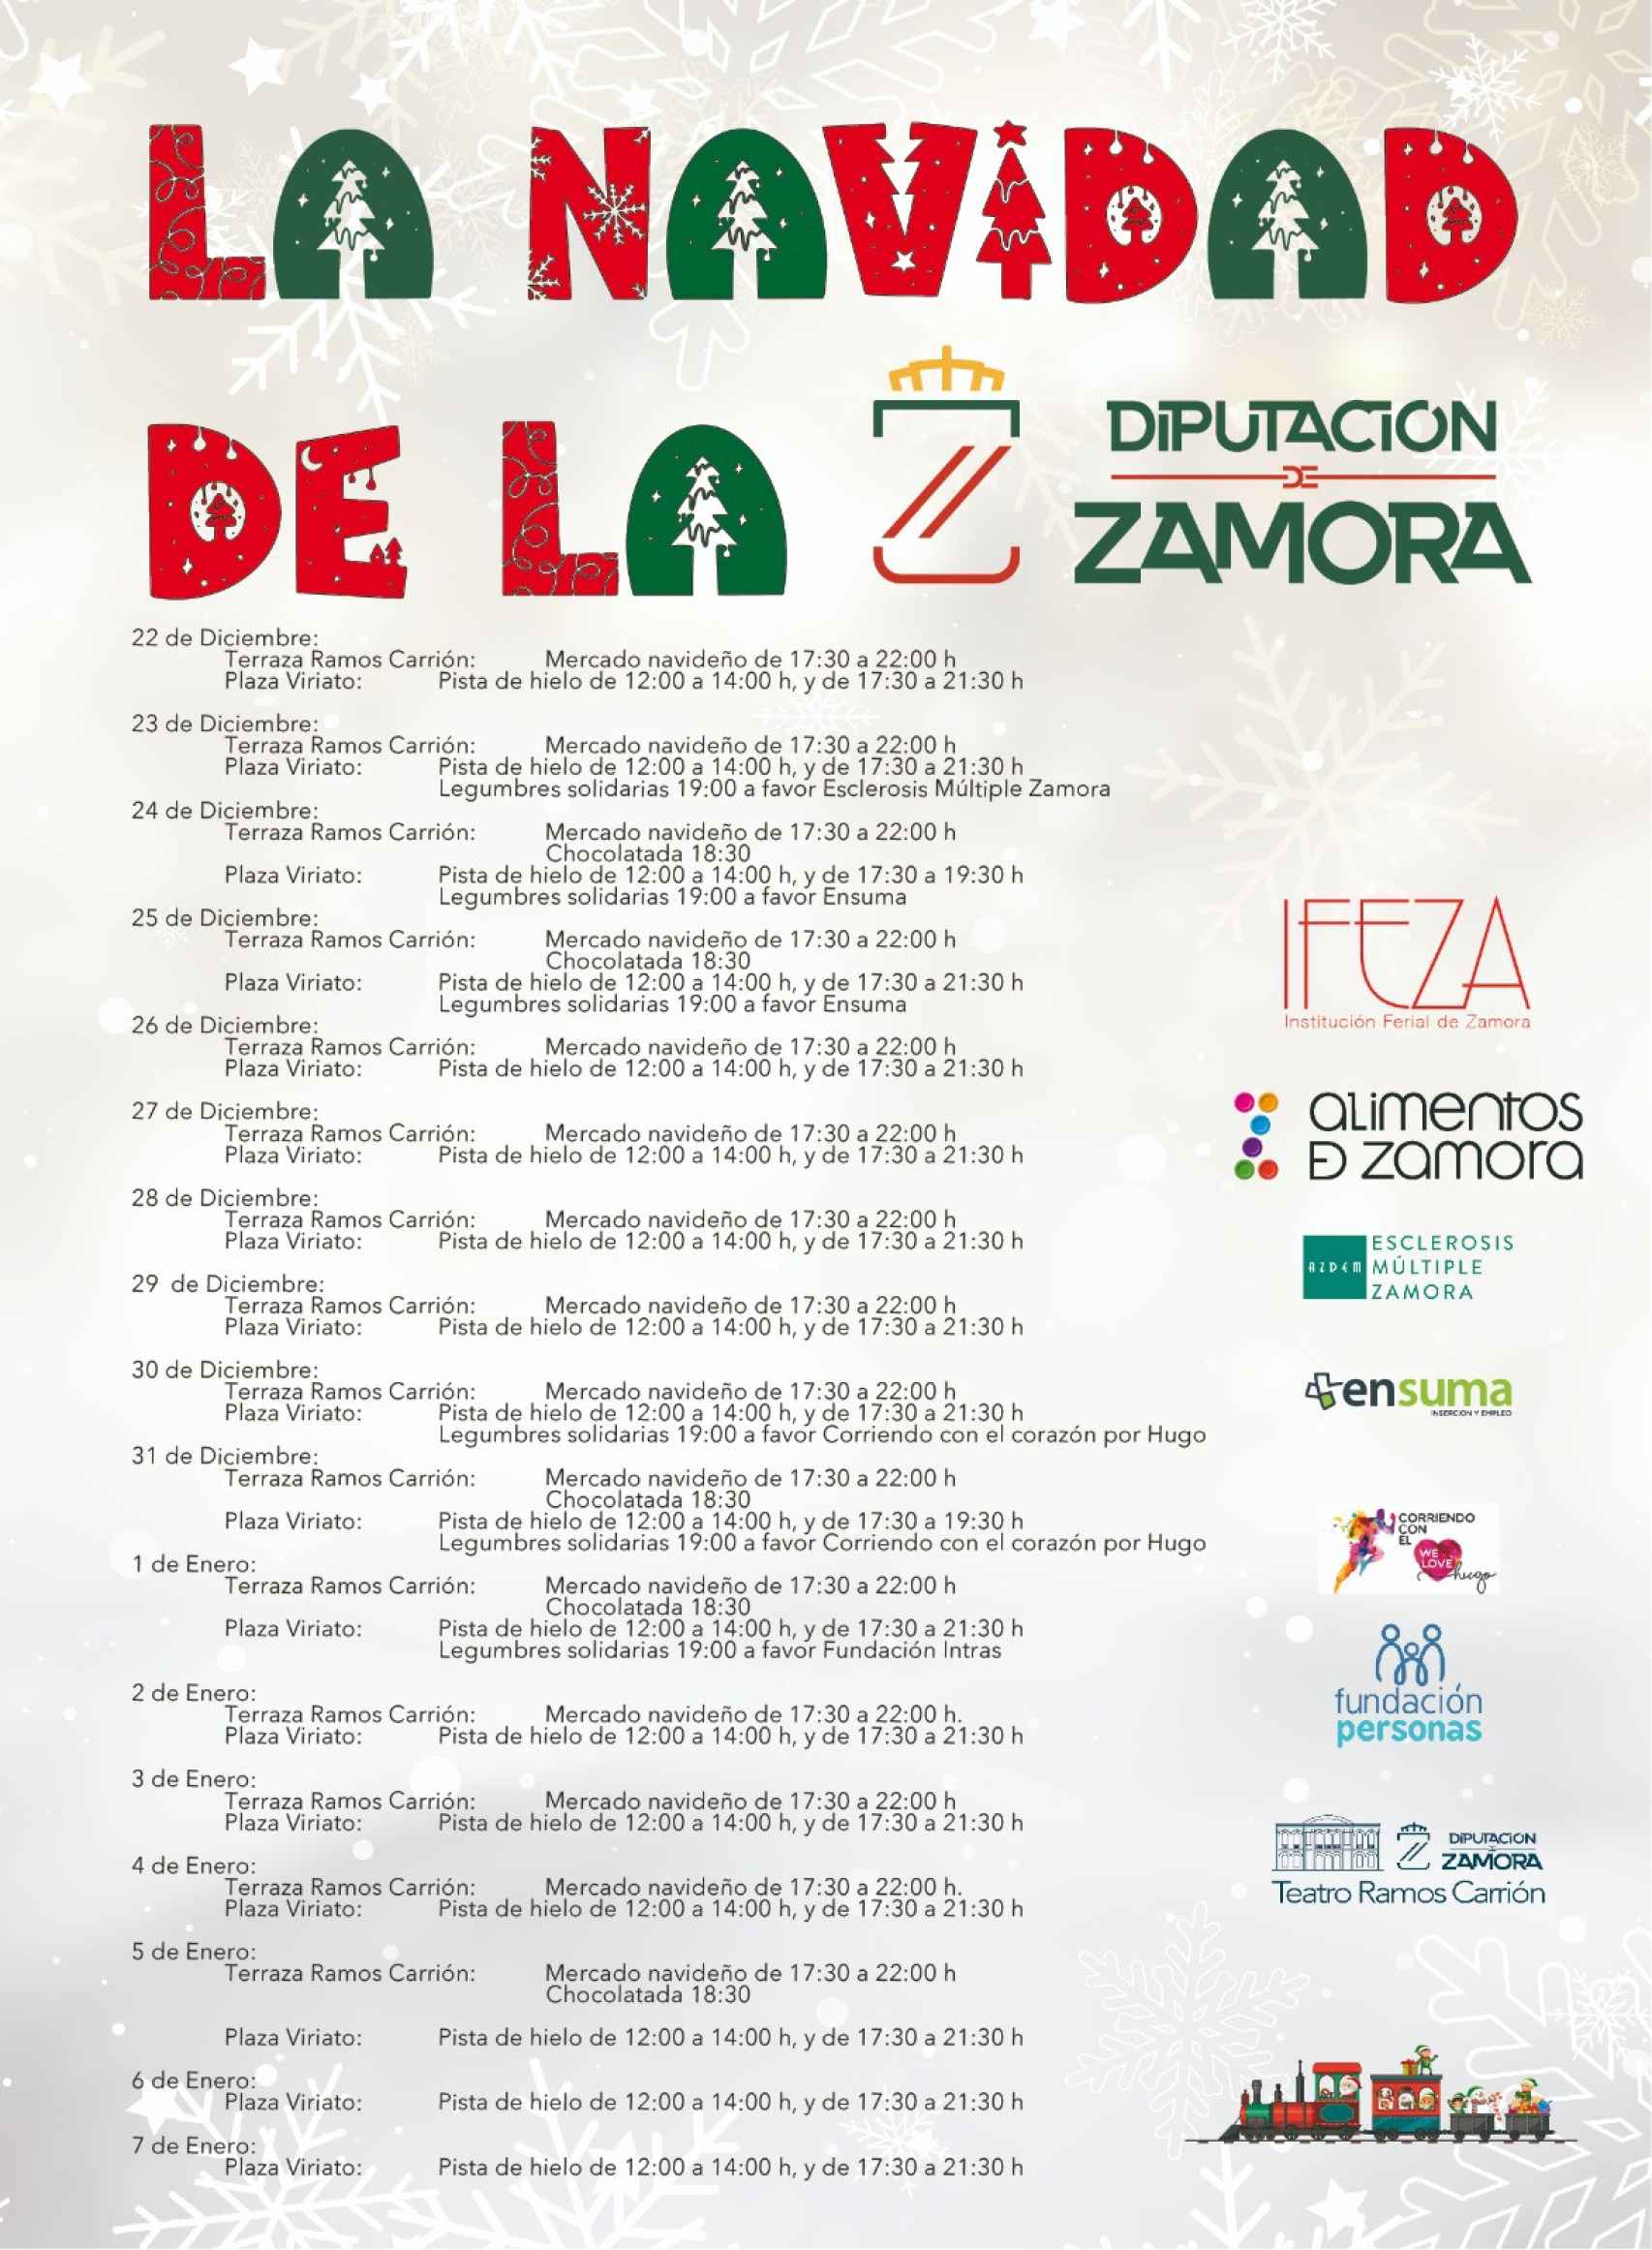 Programa de actividades de la Navidad de la Diputación de Zamora